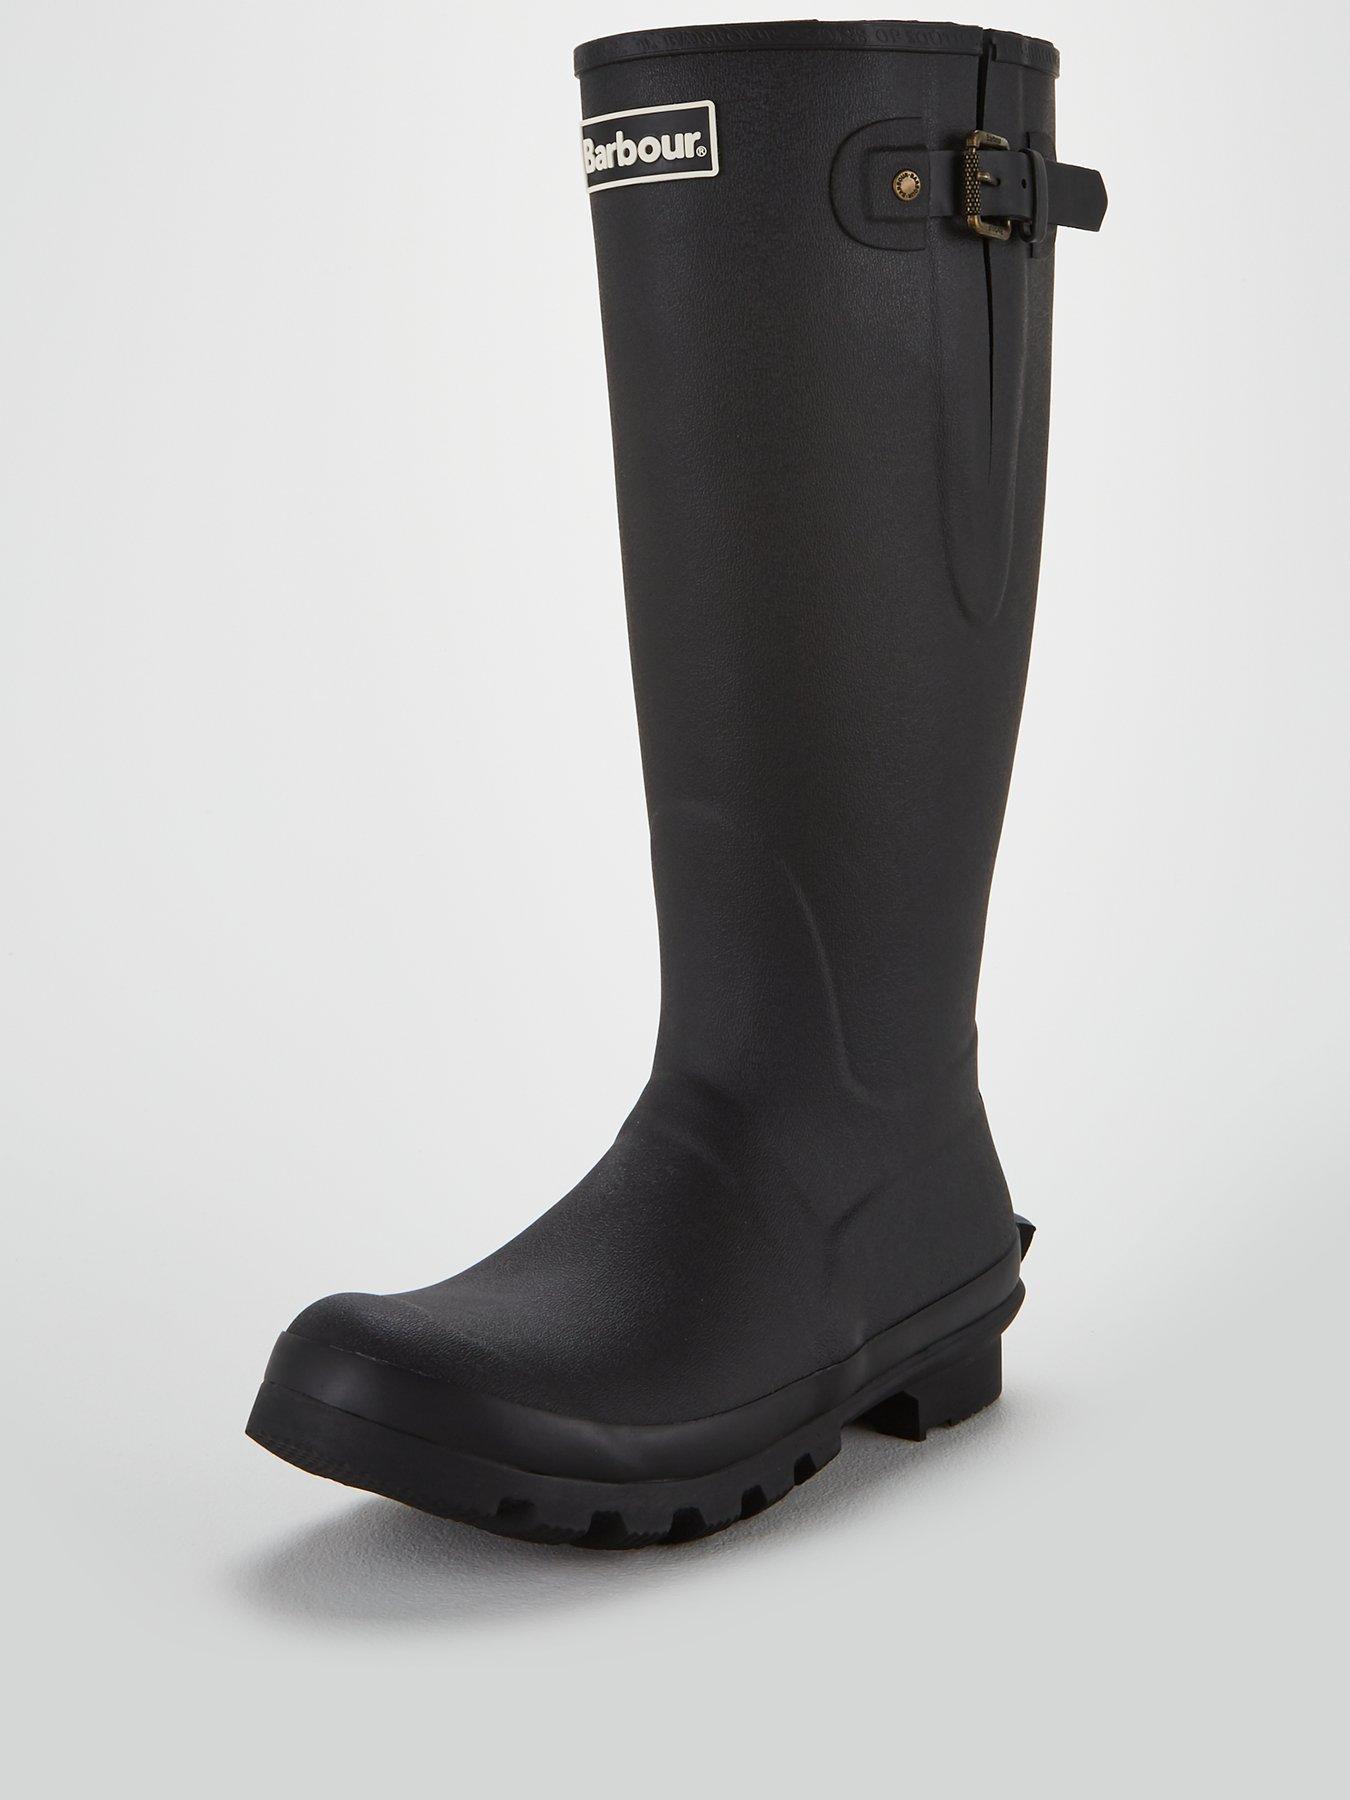 Barbour Amble Wellington Boots - Black | very.co.uk